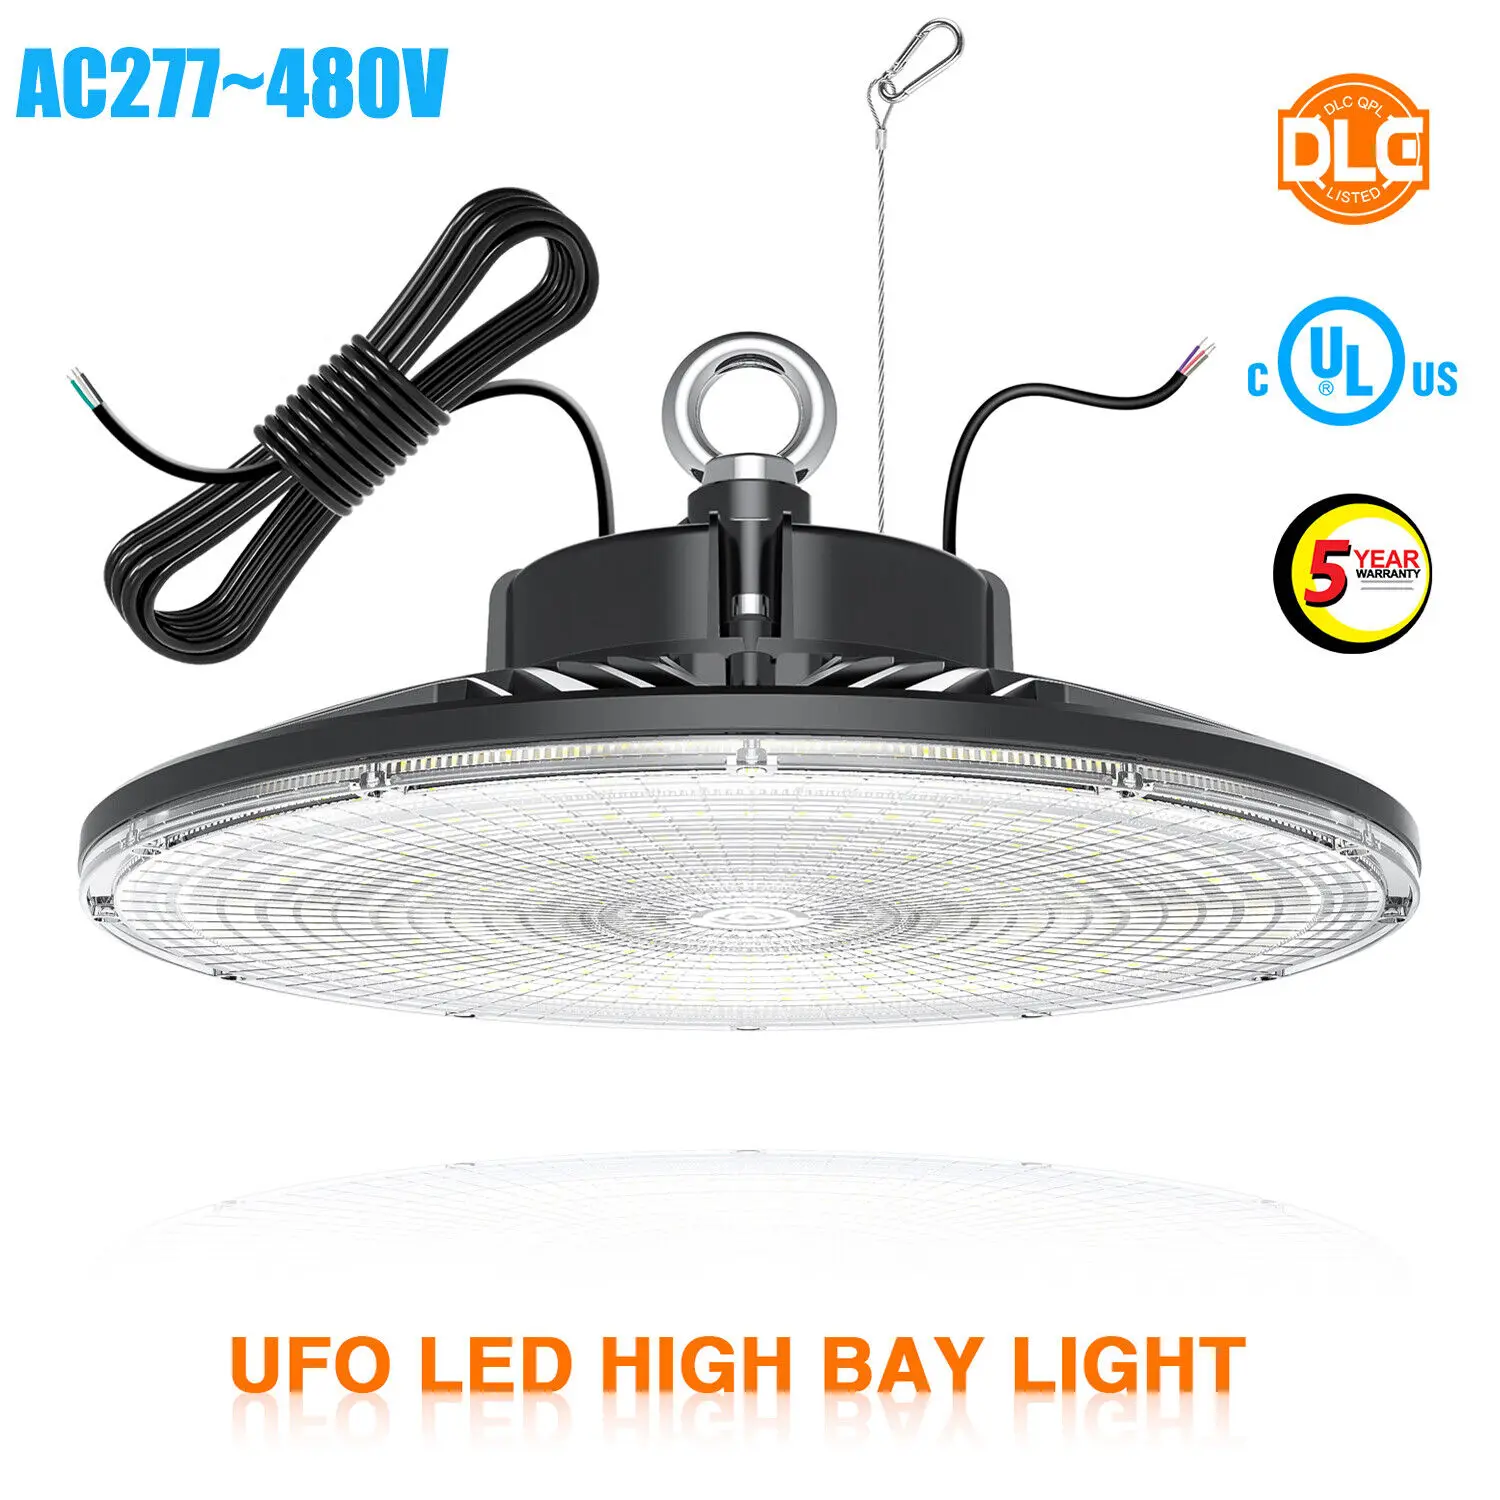 

AC277-480V UFO LED High Bay Light 100W, 150W, 200W, 240W 0-10V Dimmable High Bay LED Shop Lights UL DLC Approved 5000K Daylight